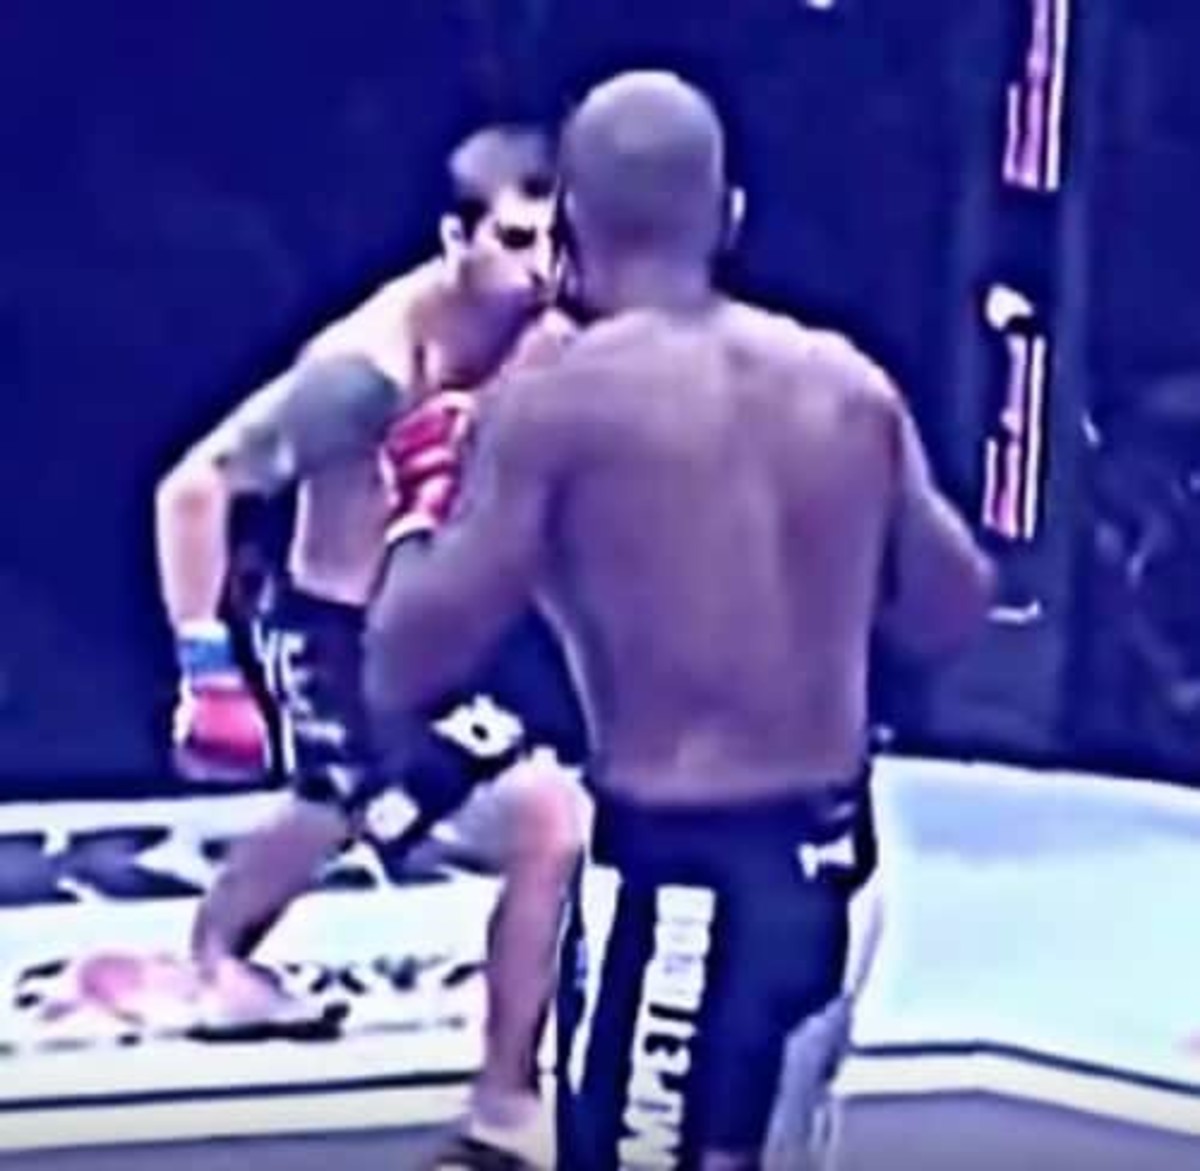 Watch this horrifying bone break in Brazilian MMA bout